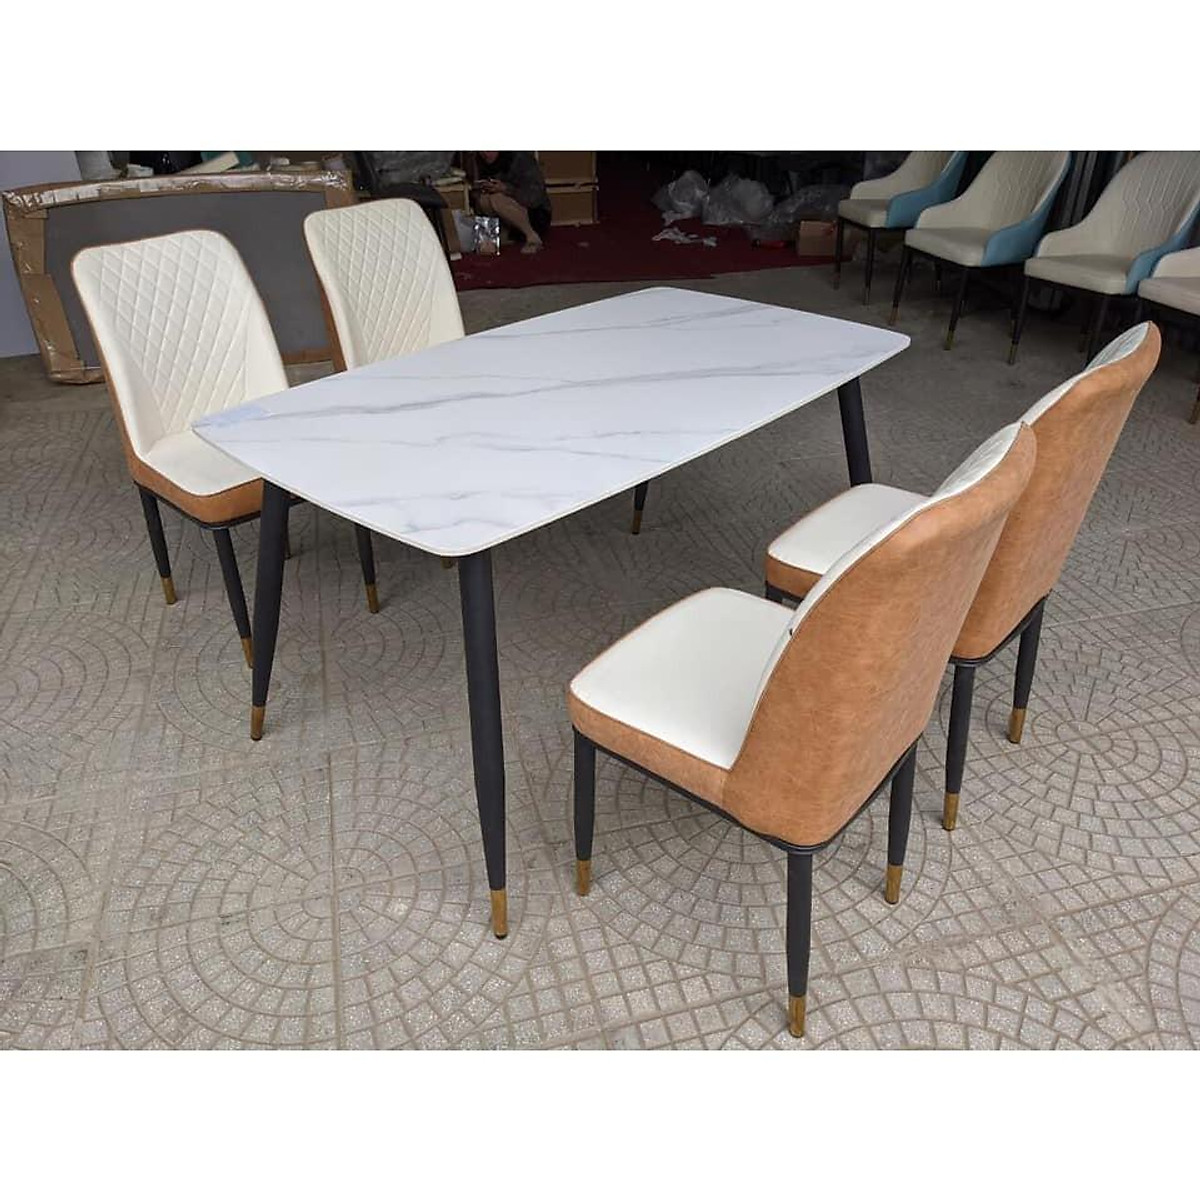 Bộ bàn ghế phòng ăn Tundo mặt đá phiến ceramic hiện đại sang trọng 1m2 kèm 4 ghế